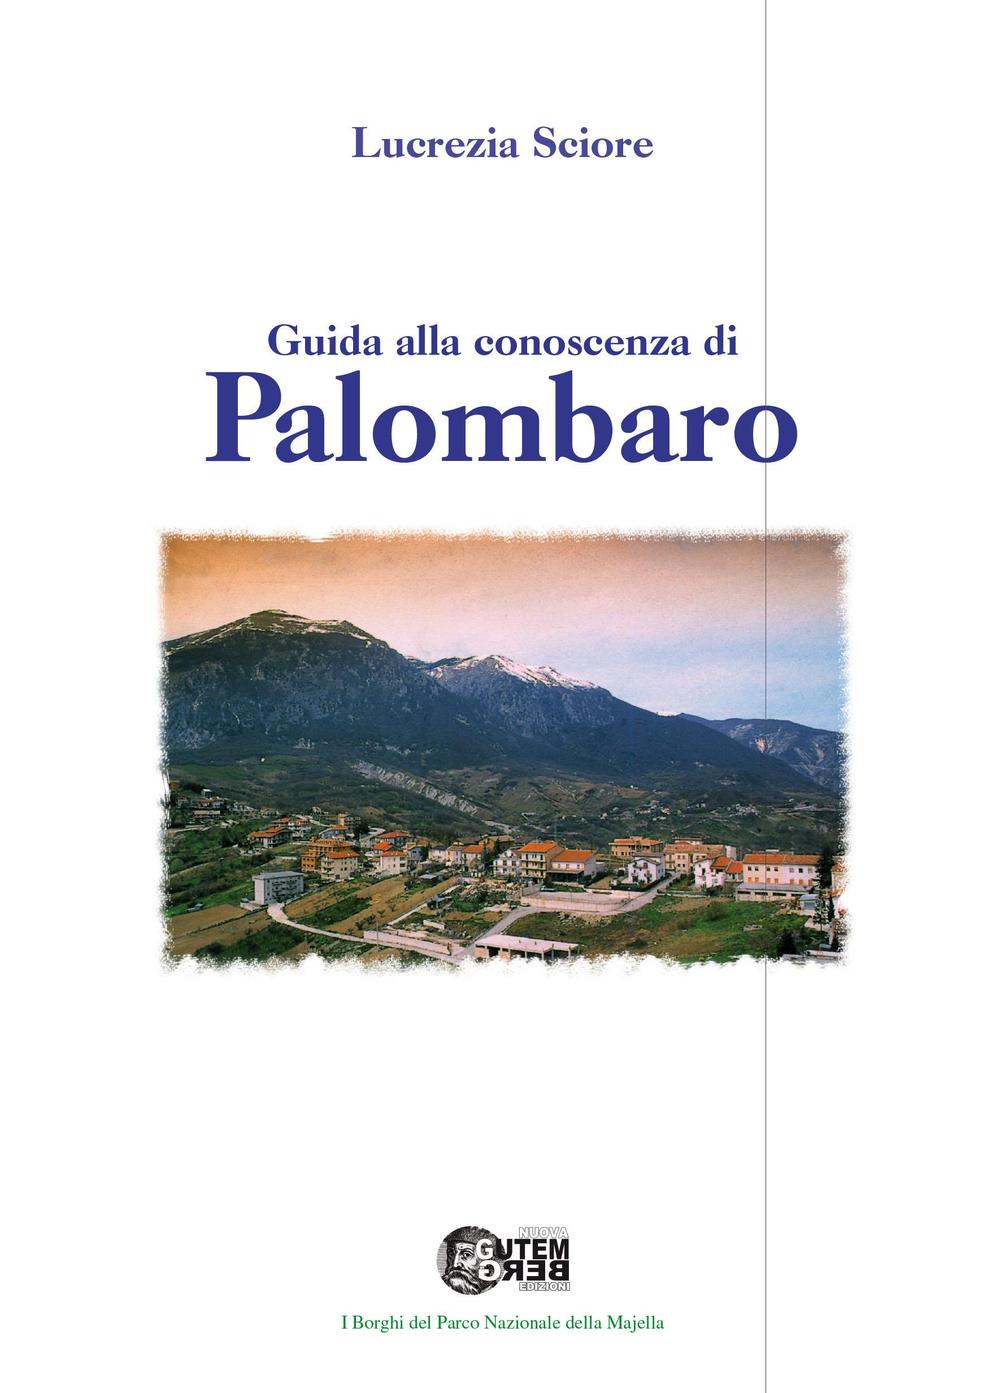 Guida alla conoscenza di Palombaro